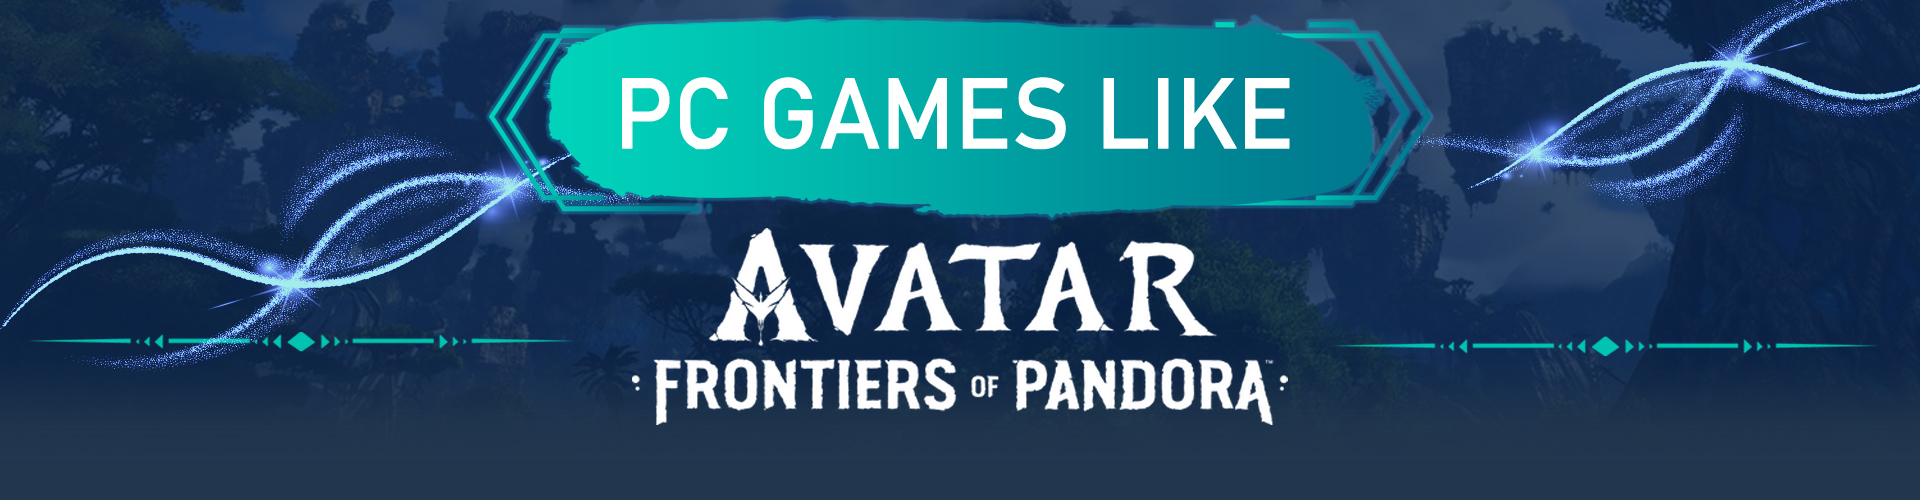 Juegos de PC como Avatar Frontiers of Pandora